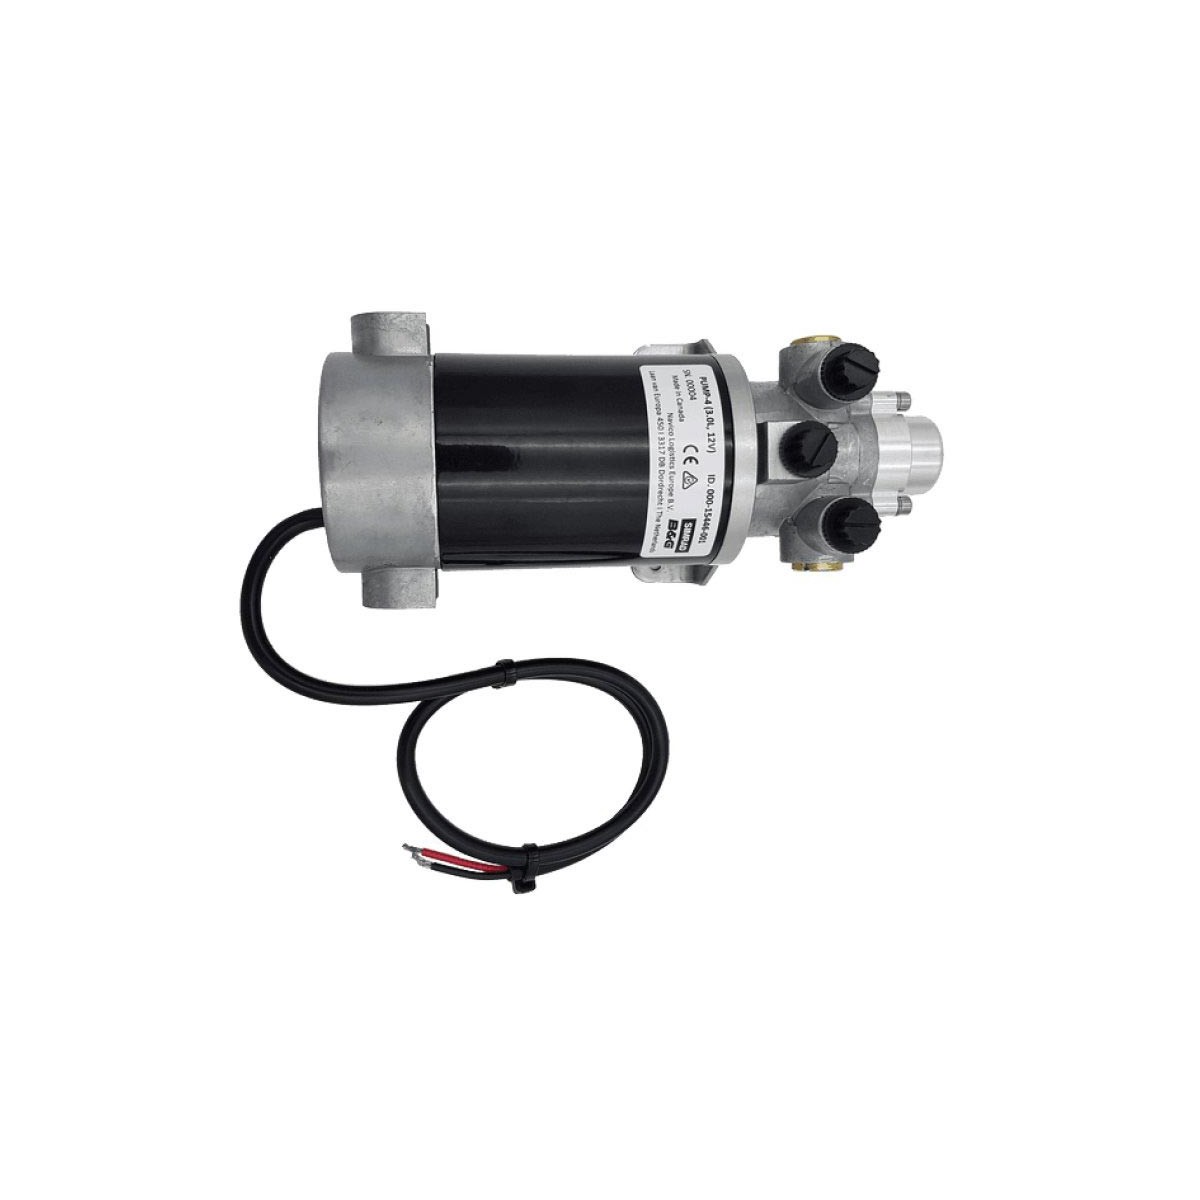 Simrad Pompe Hydraulique Pump 12/24V 3.0L 000-15446-002 - Comptoir